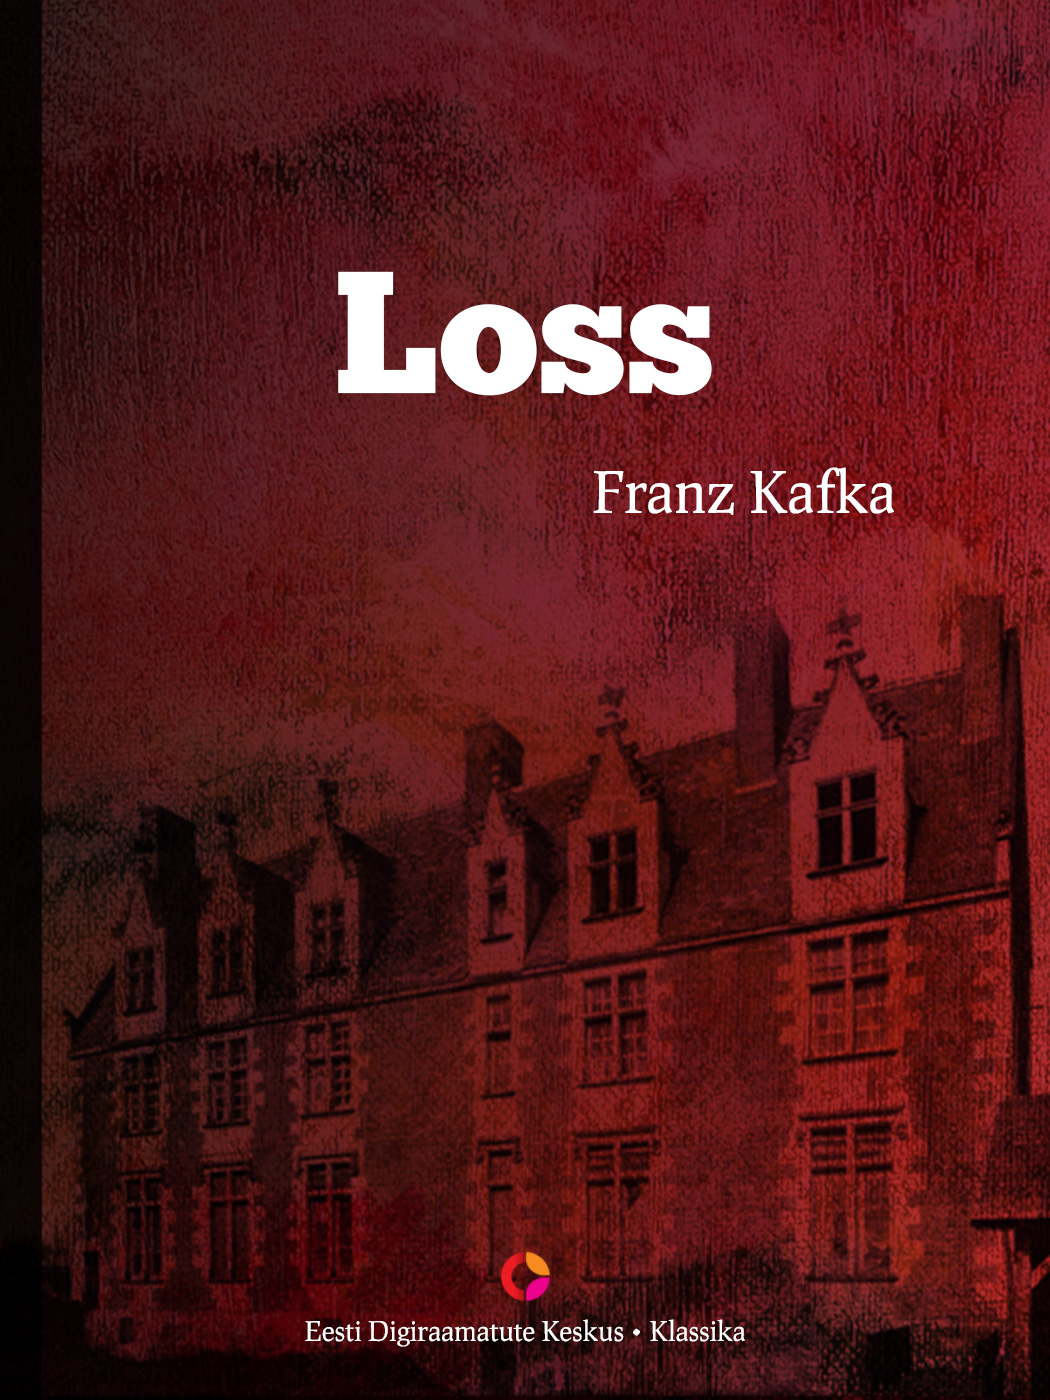 Книга Loss из серии , созданная Franz Kafka, может относится к жанру Зарубежная классика, Литература 20 века, Зарубежная старинная литература. Стоимость электронной книги Loss с идентификатором 21183684 составляет 556.45 руб.